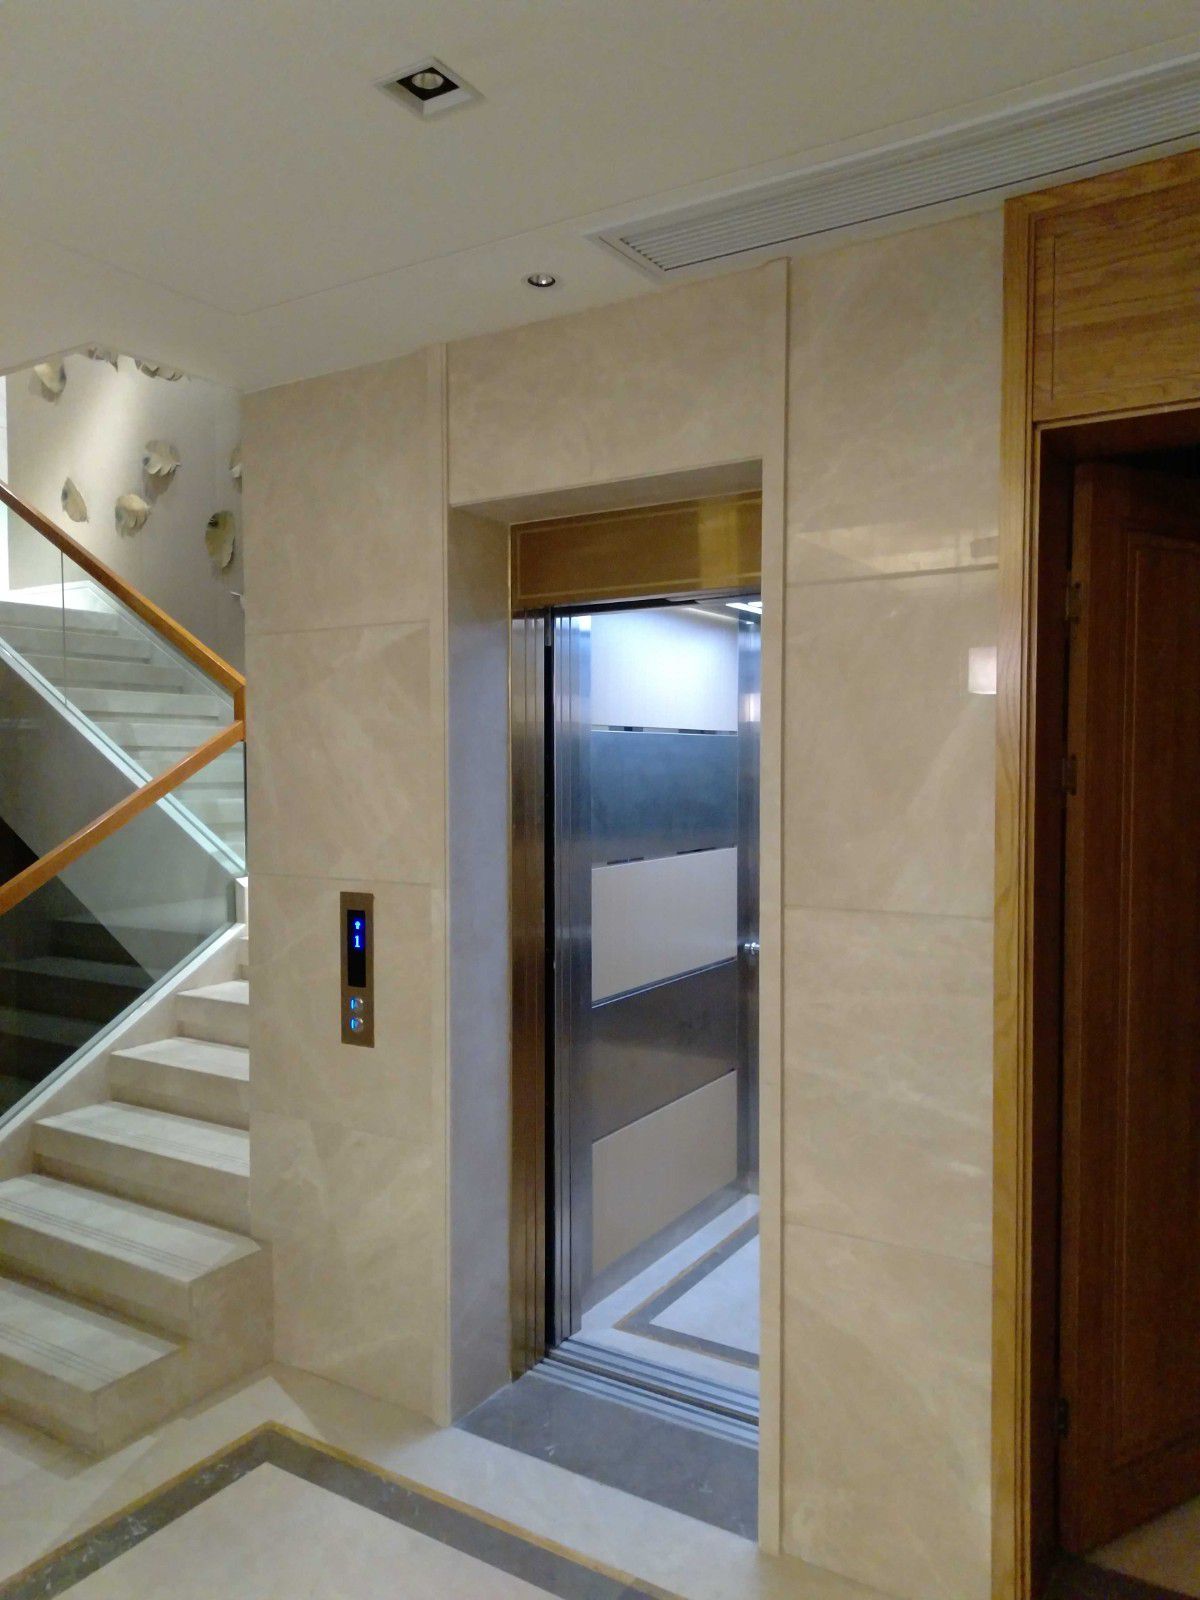 Tienda pequeñaPequeños ascensores domésticosA qué se debe prestar atención al usar